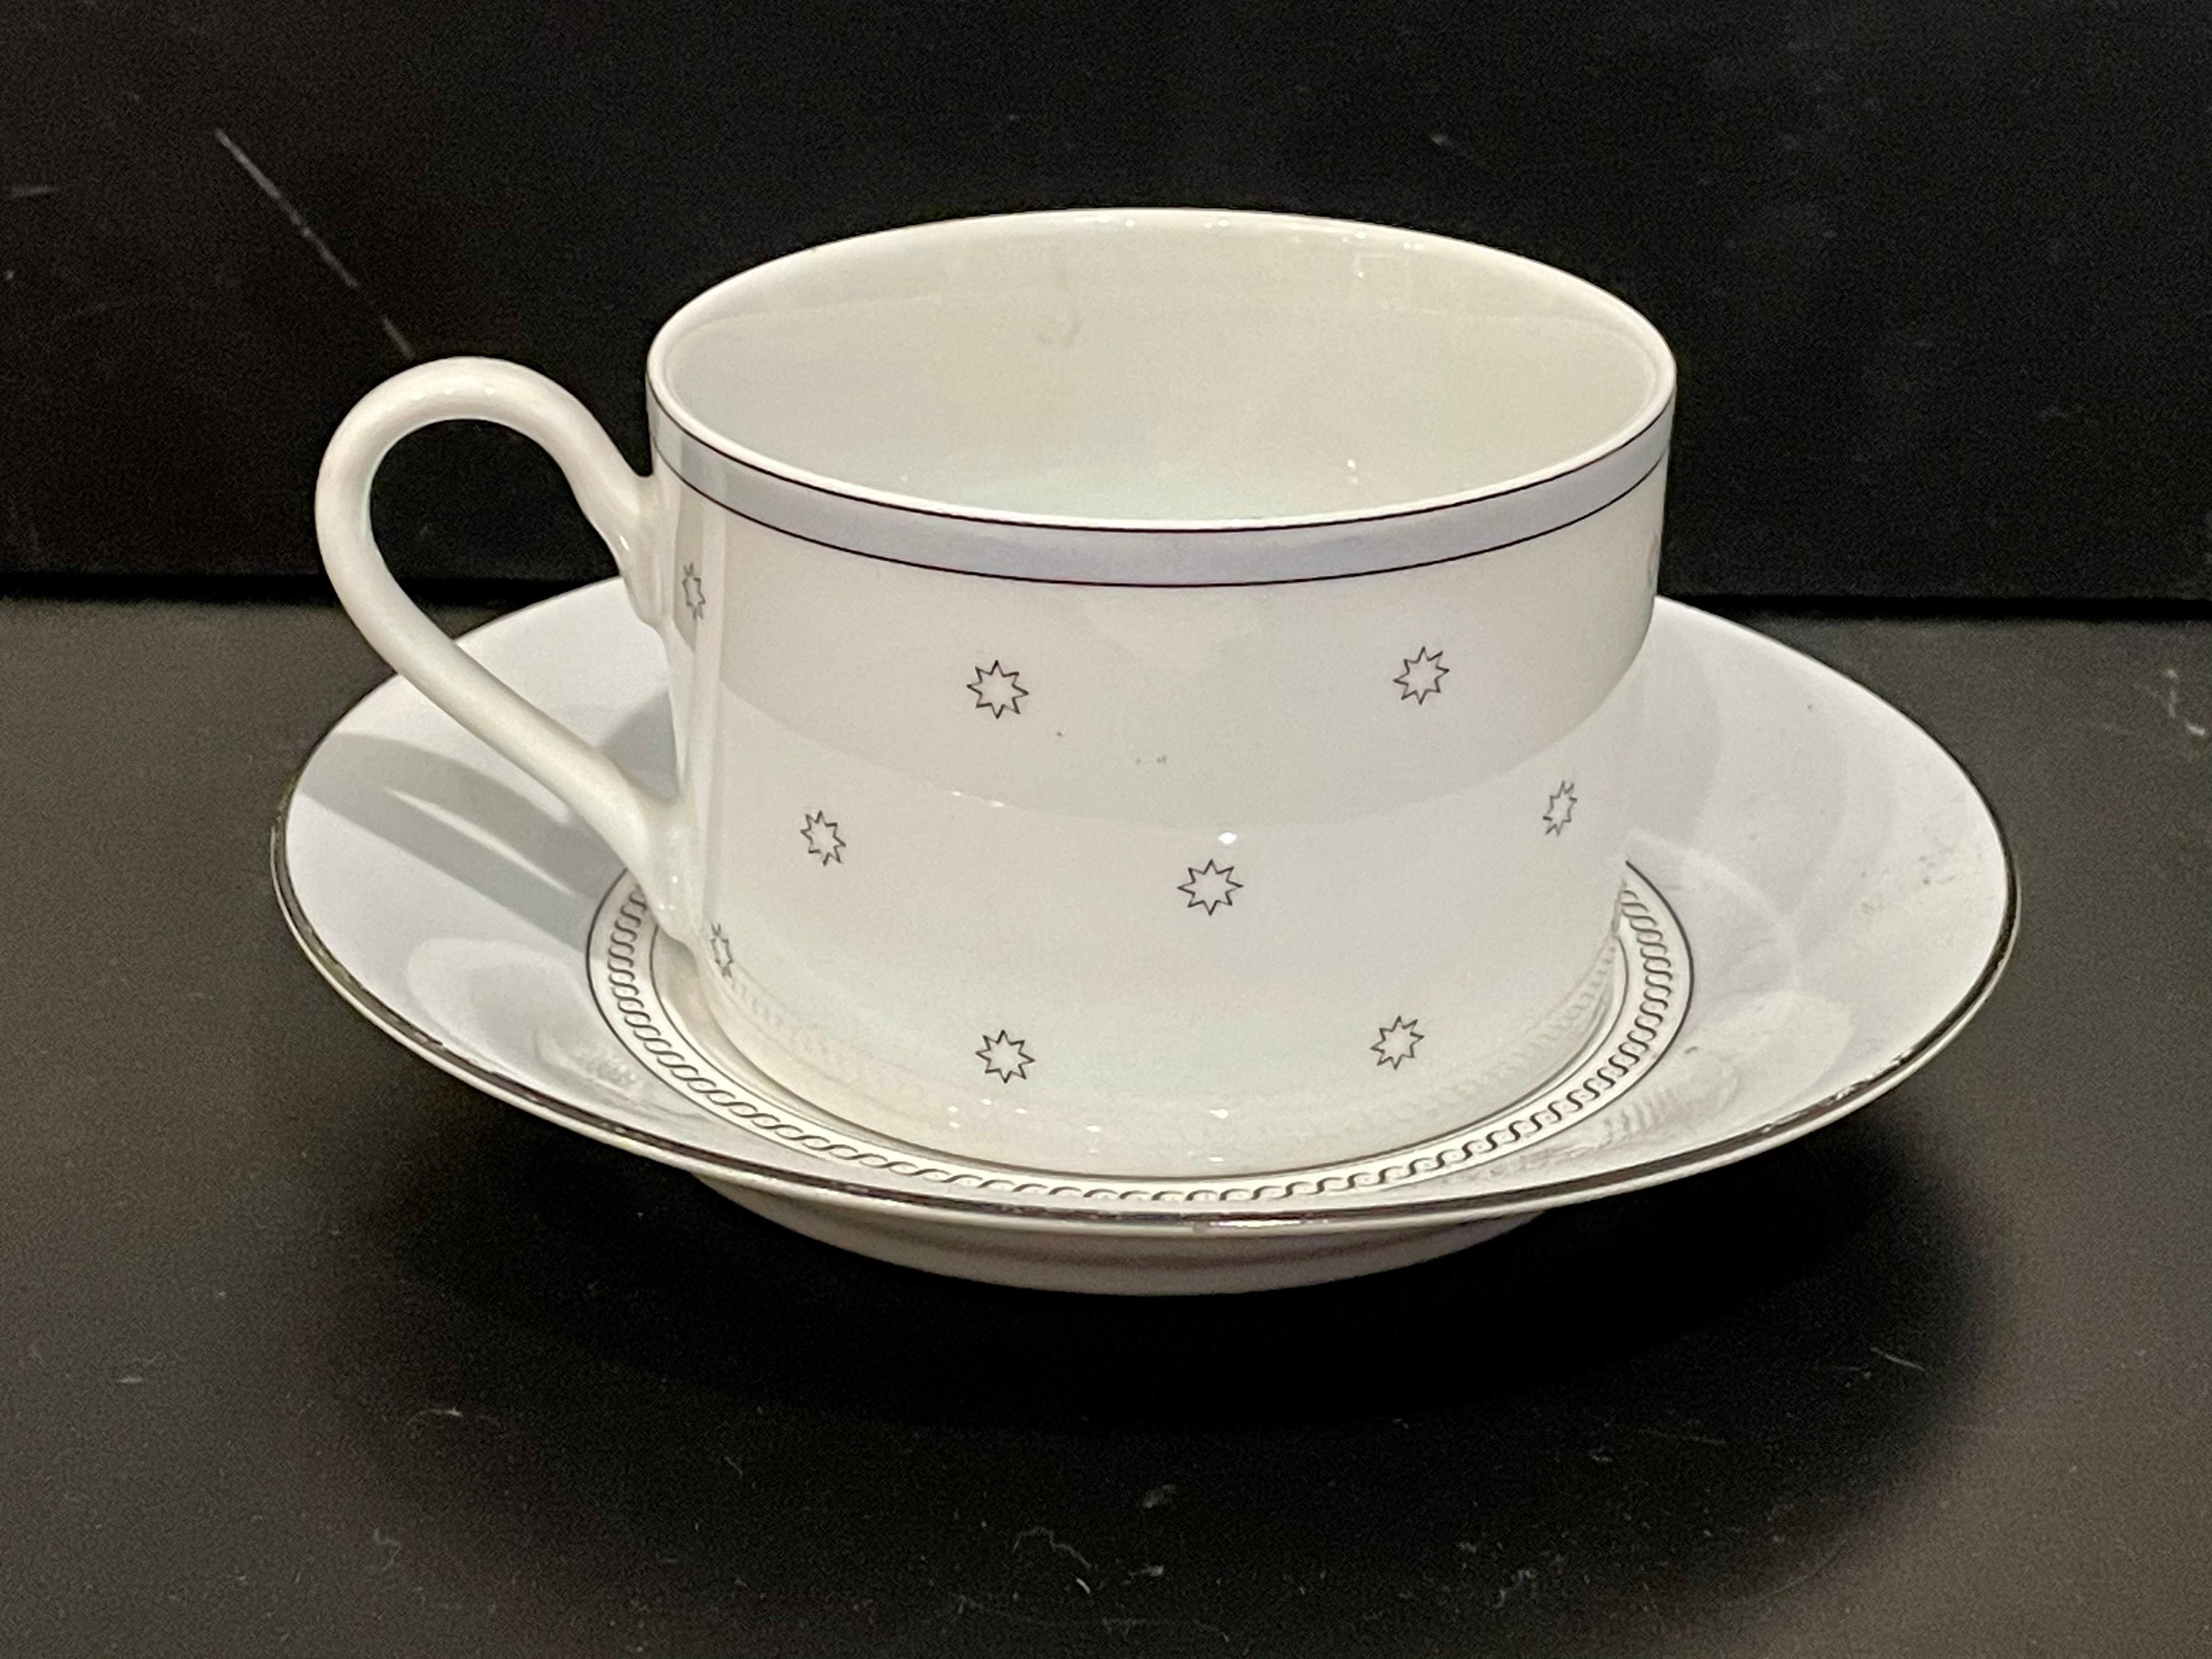 Magnifique ensemble de tasses à café simples et soucoupes conçu par Michael Graves pour Swid Powell, ensemble très rare conçu en 1987 en finition porcelaine. La soucoupe a un diamètre de 6 pouces.